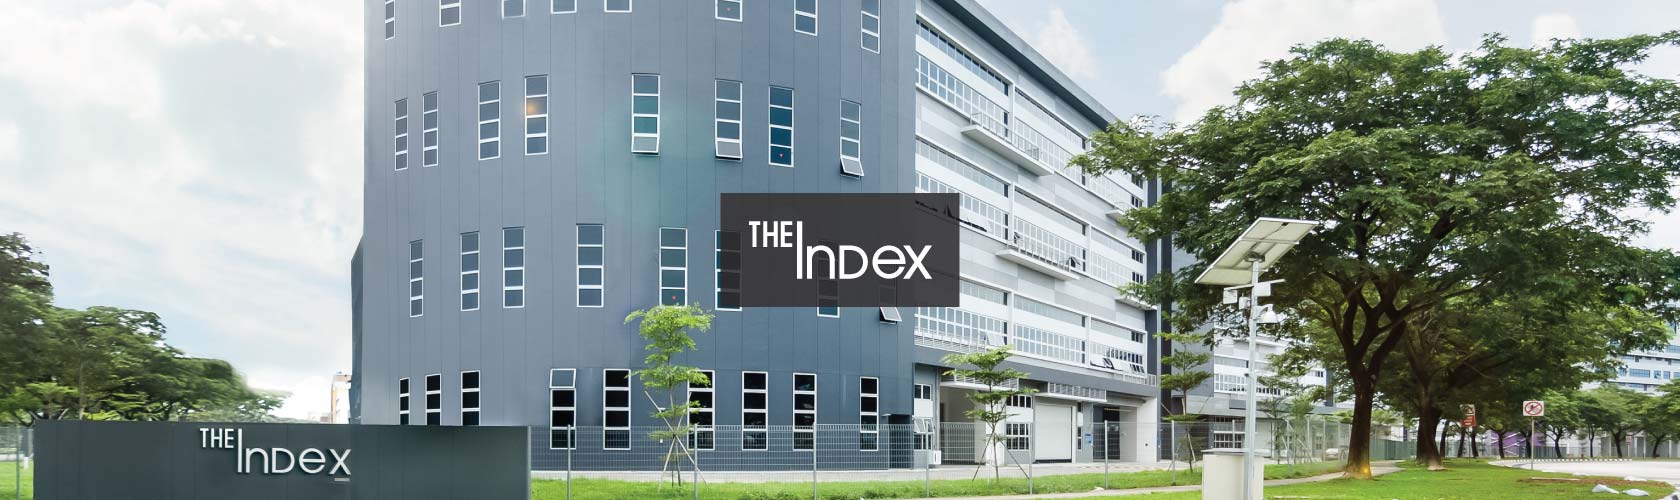 The Index Facade